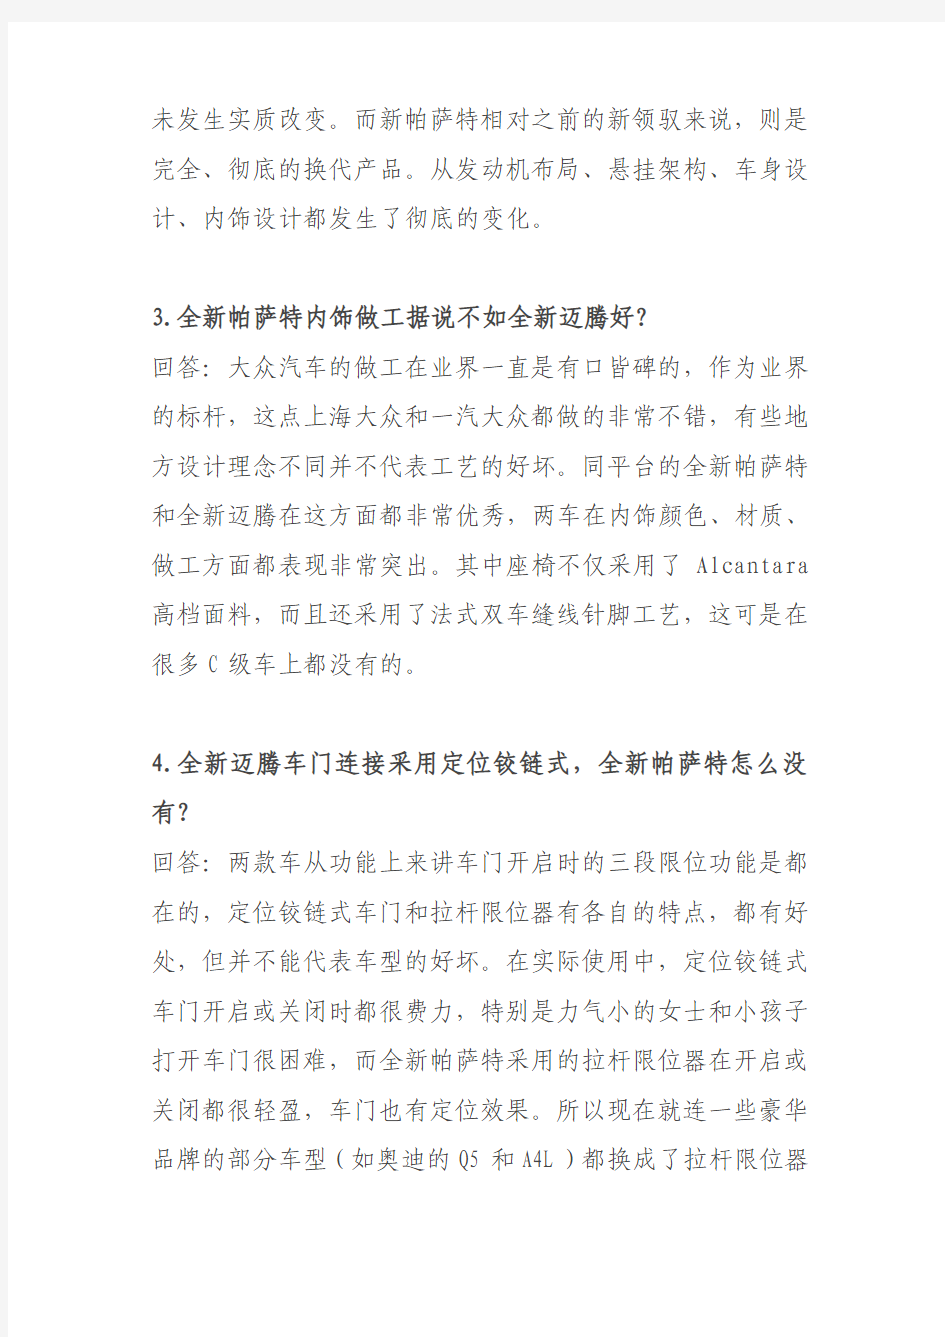 上海大众针对《全新迈腾决胜新帕萨特五大利器》一文的反驳